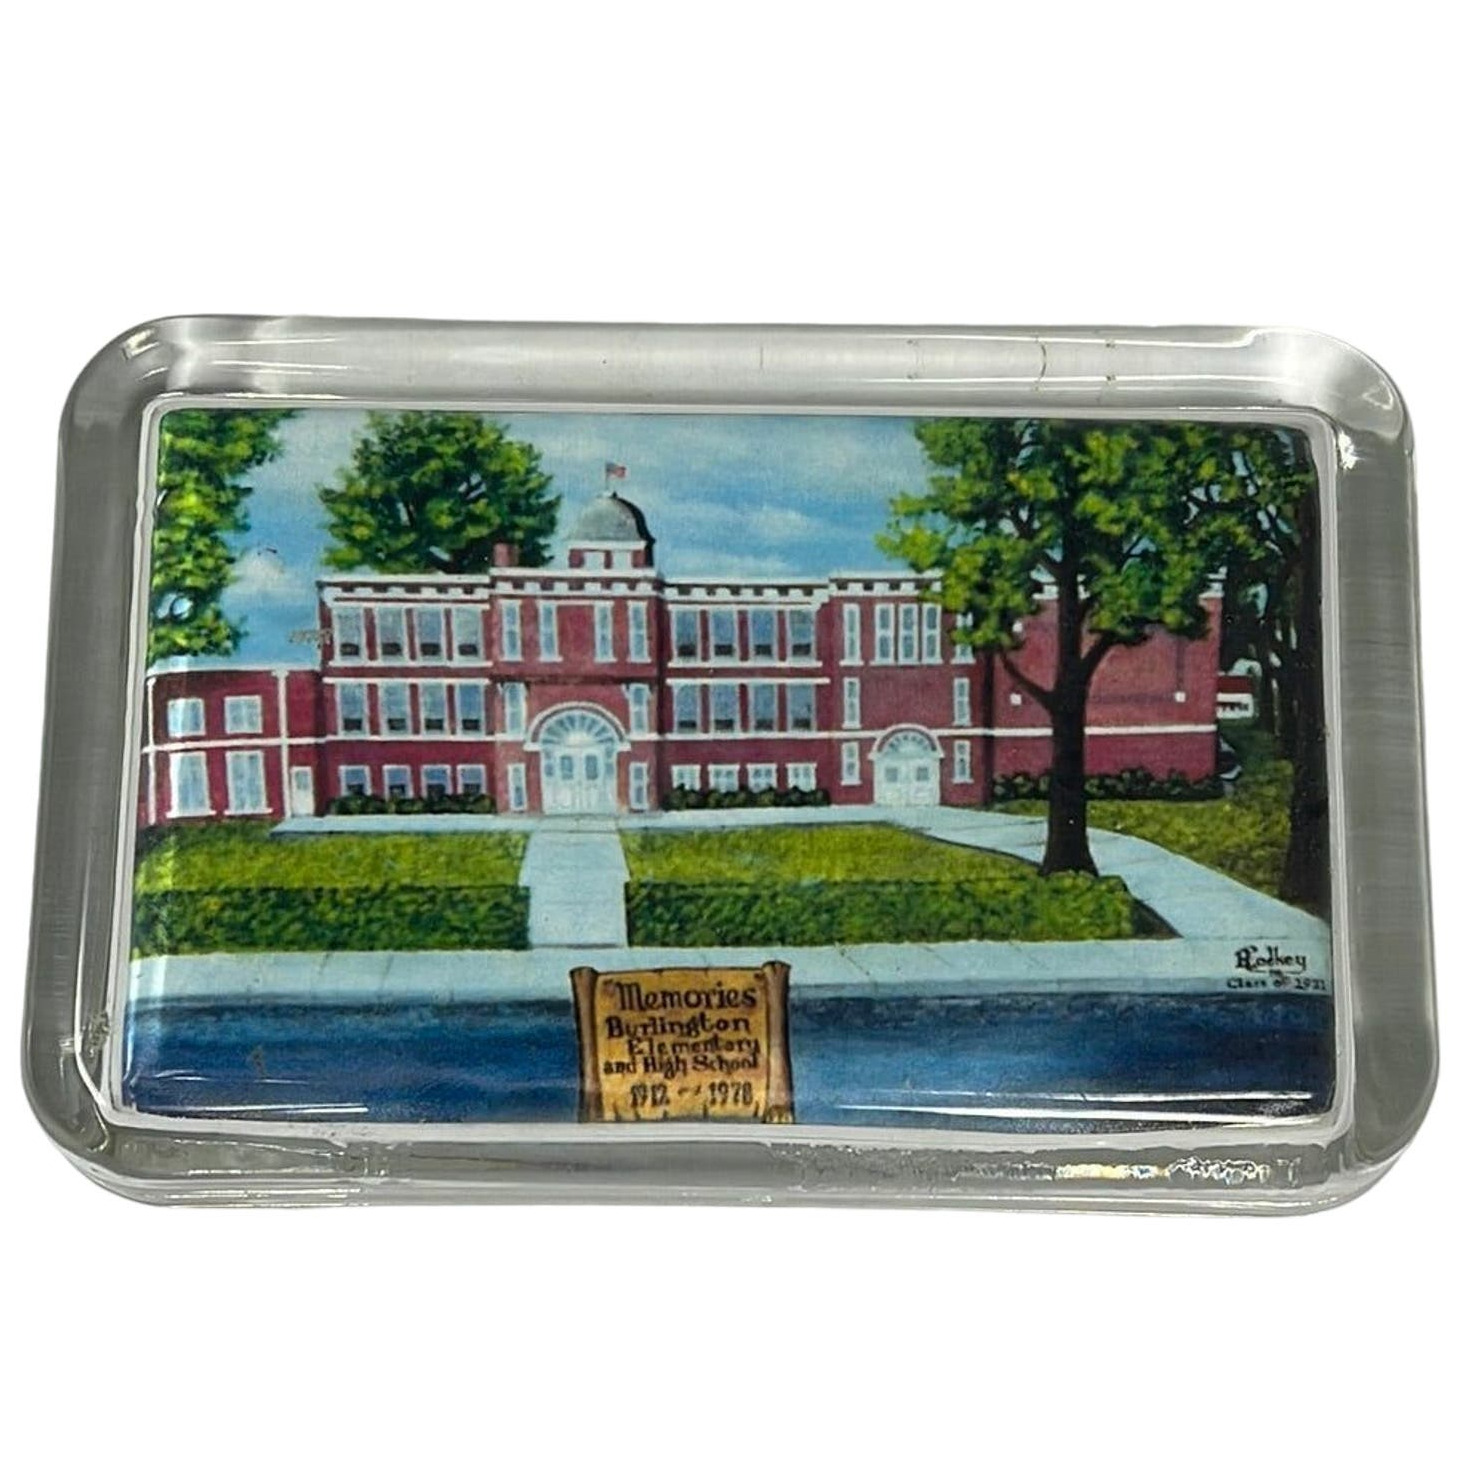 1978 Class of 1931 Glass Paperweight Burlington Elementary High School 1912 